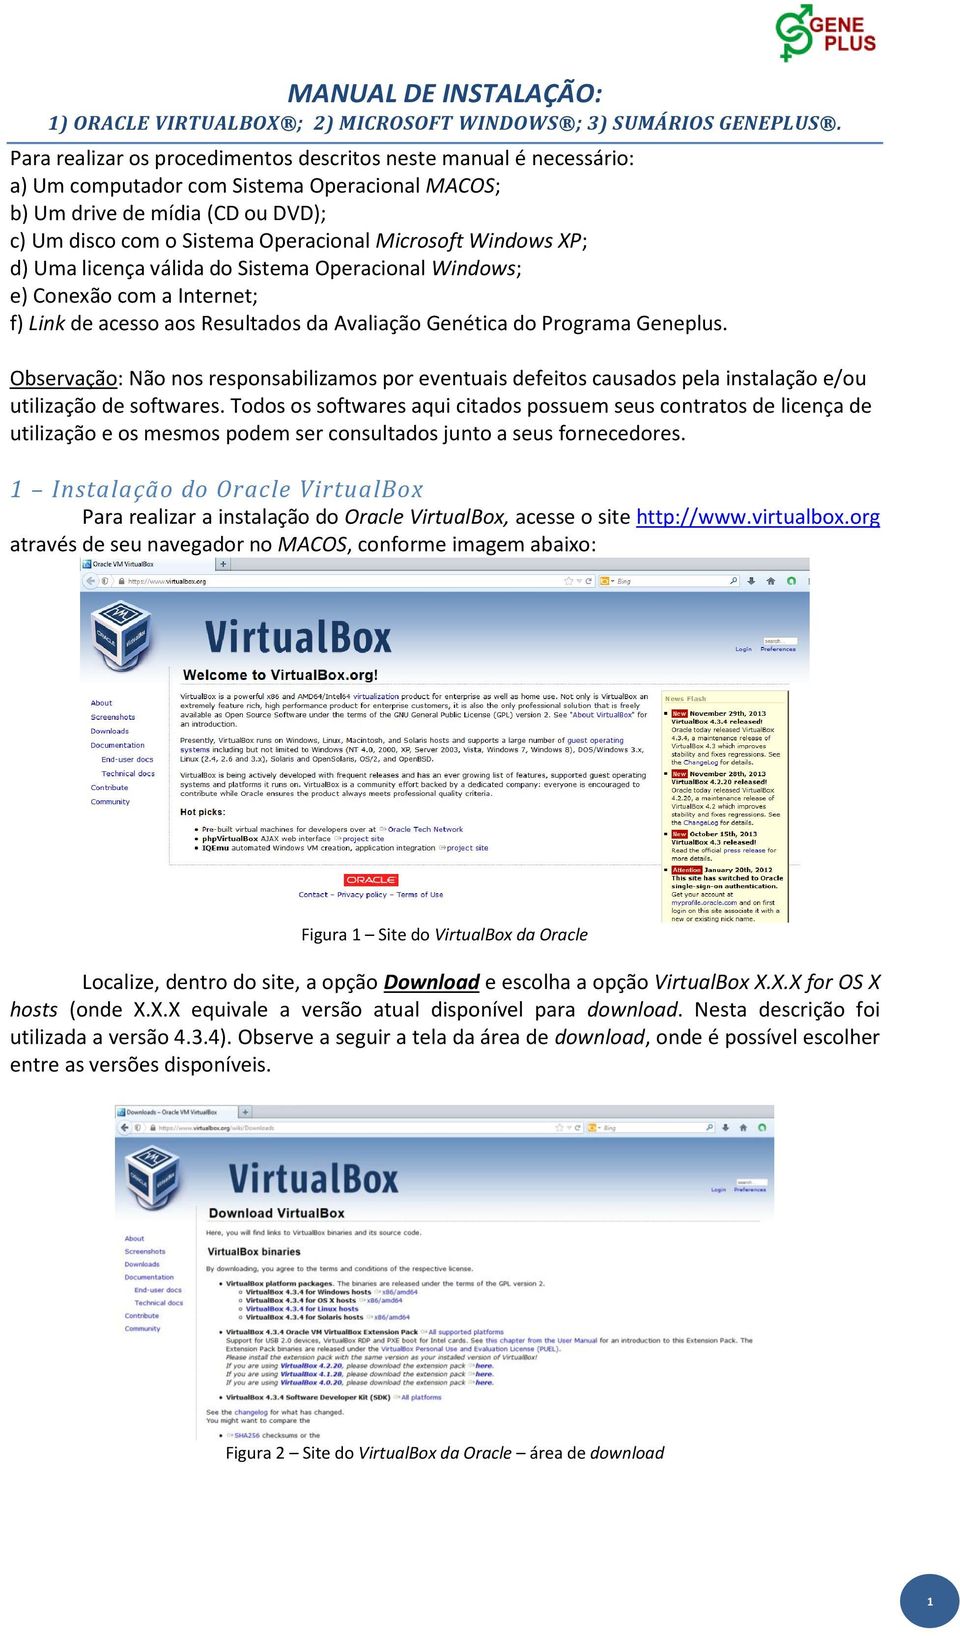 Windows XP; d) Uma licença válida do Sistema Operacional Windows; e) Conexão com a Internet; f) Link de acesso aos Resultados da Avaliação Genética do Programa Geneplus.